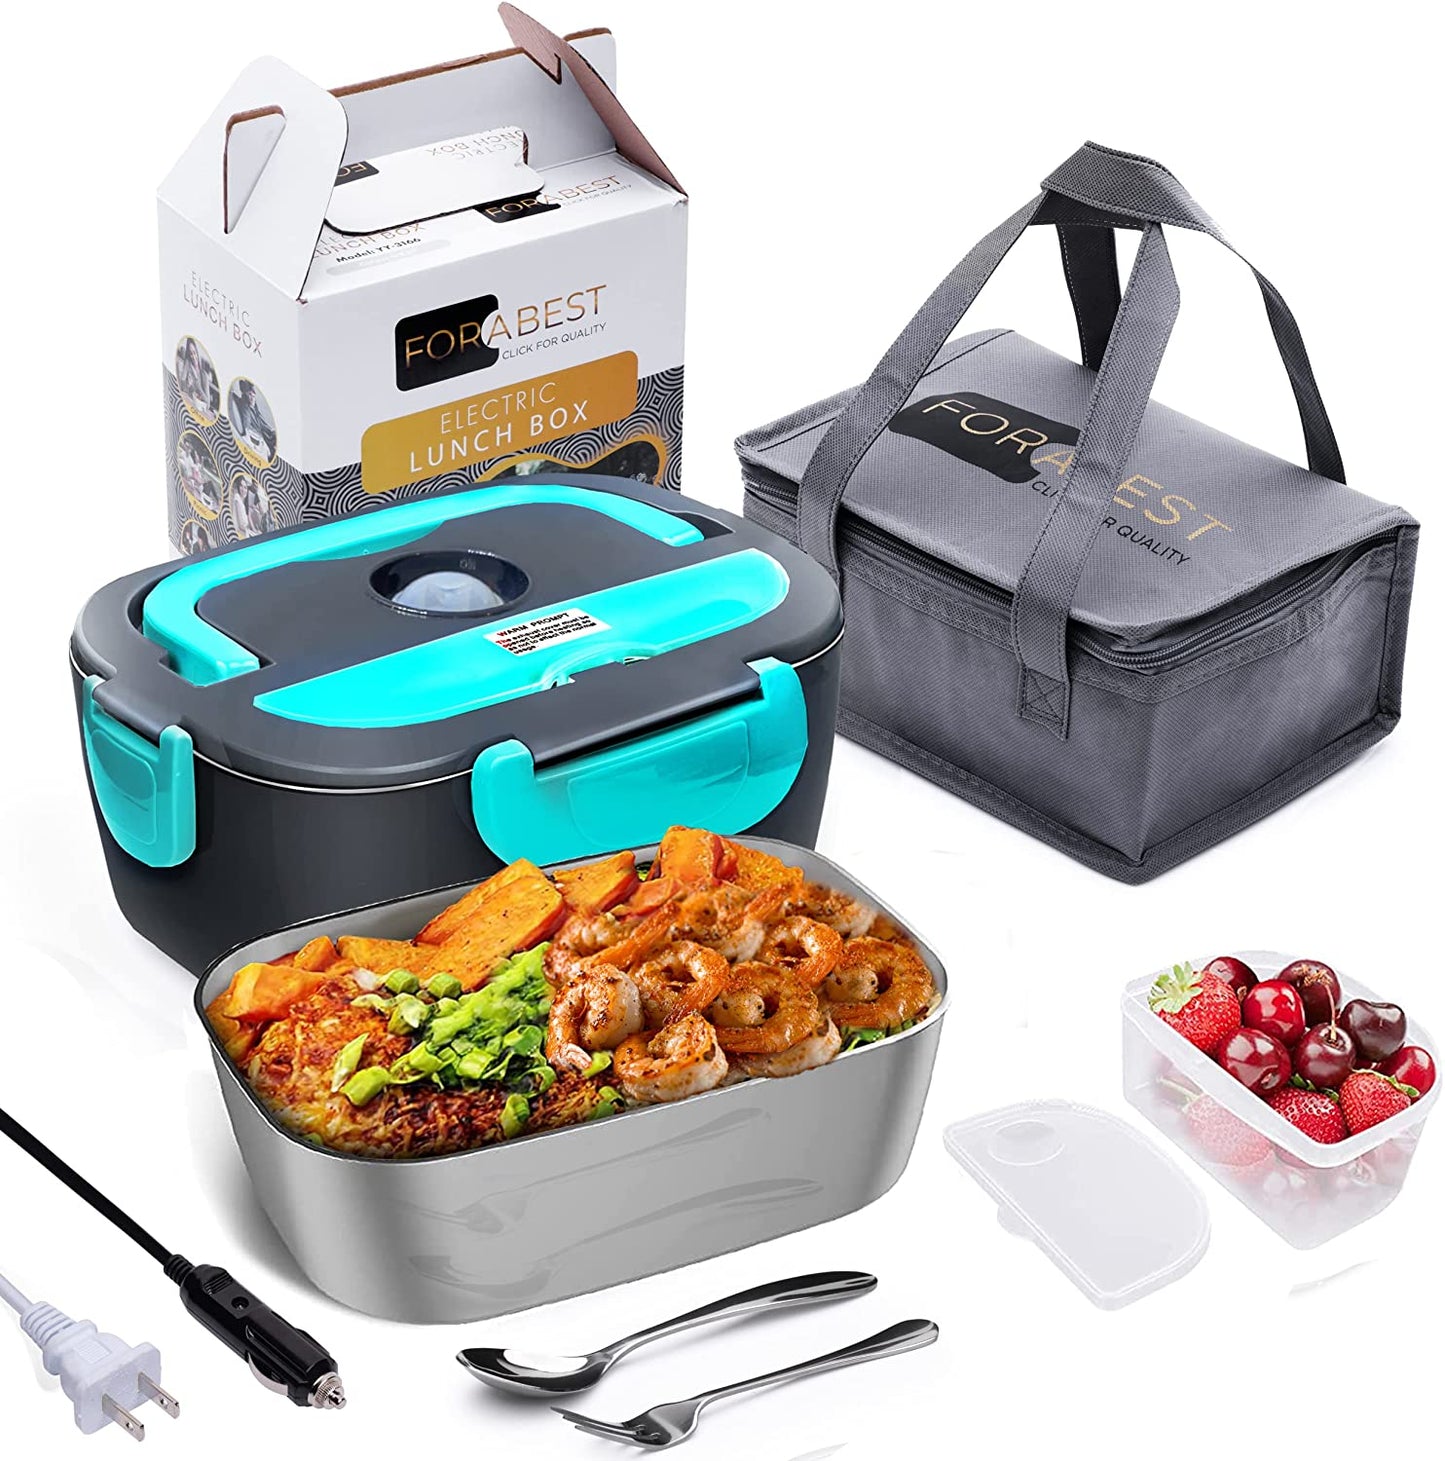 FORABEST Electric Lunch Box - Premium design